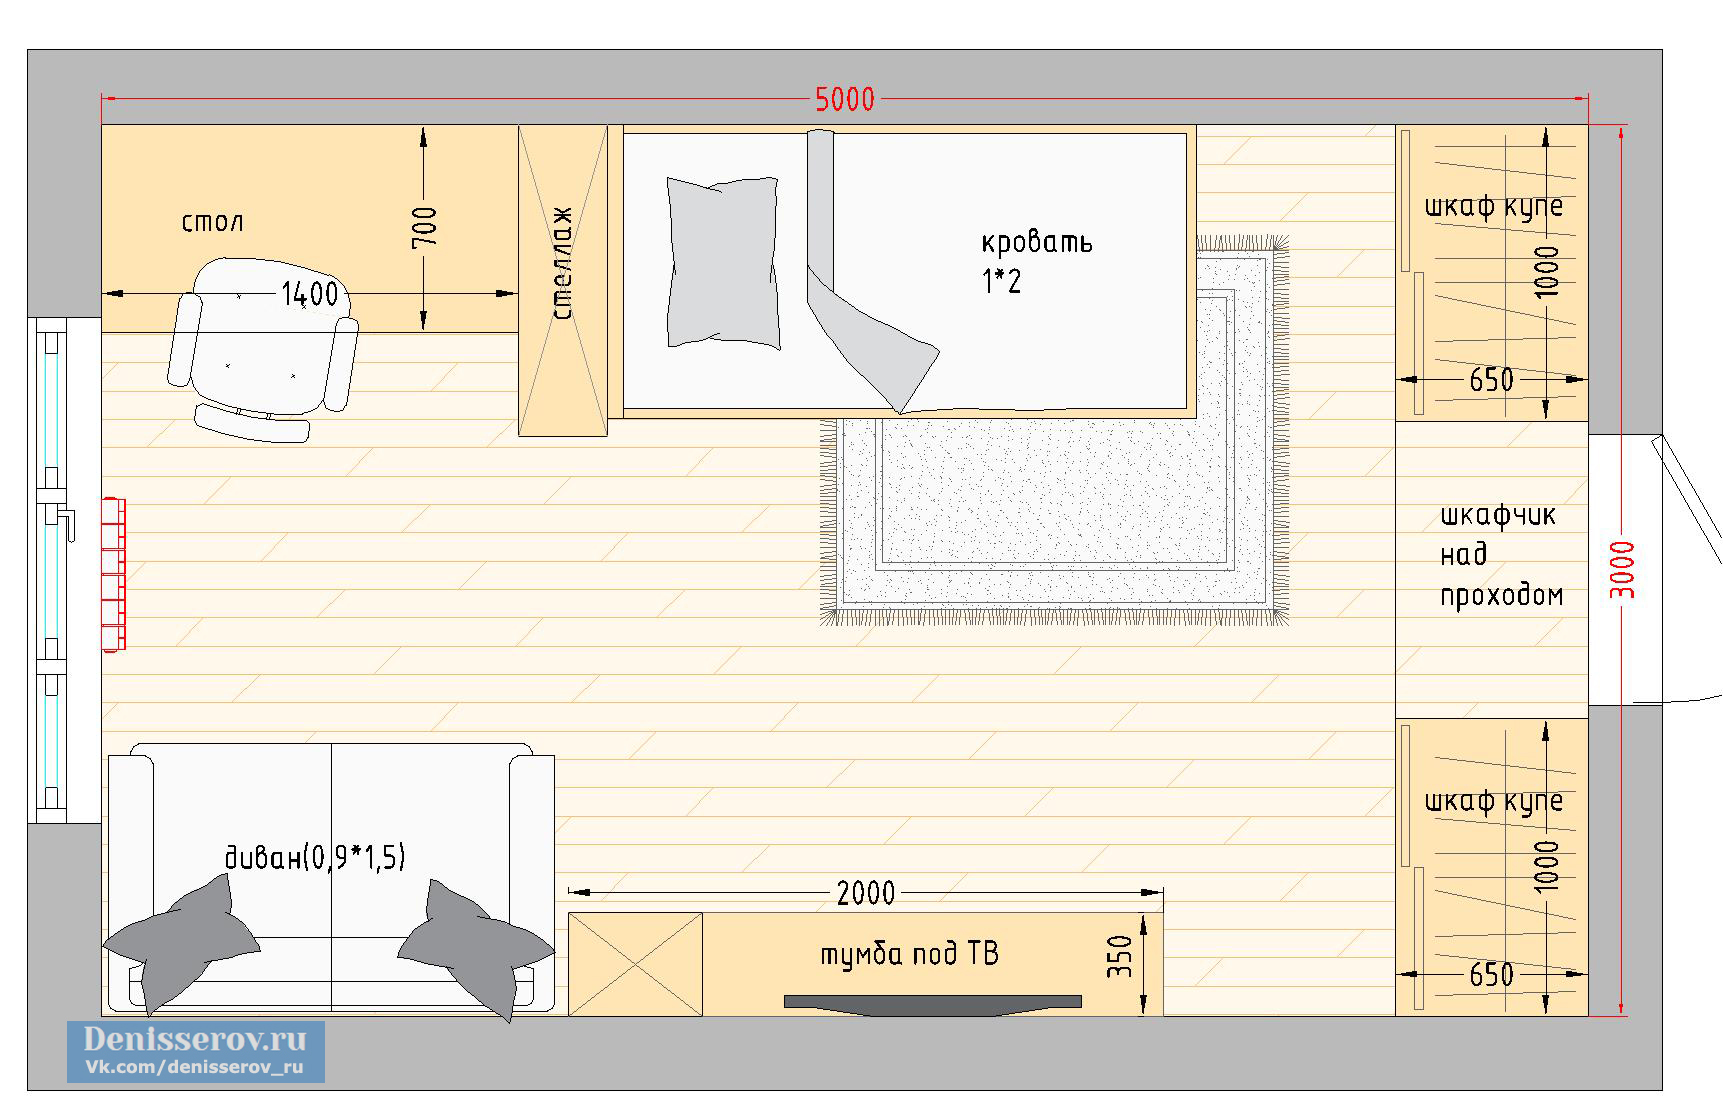 Различные варианты планировки детских комнат – от 15 до 20 кв. метров